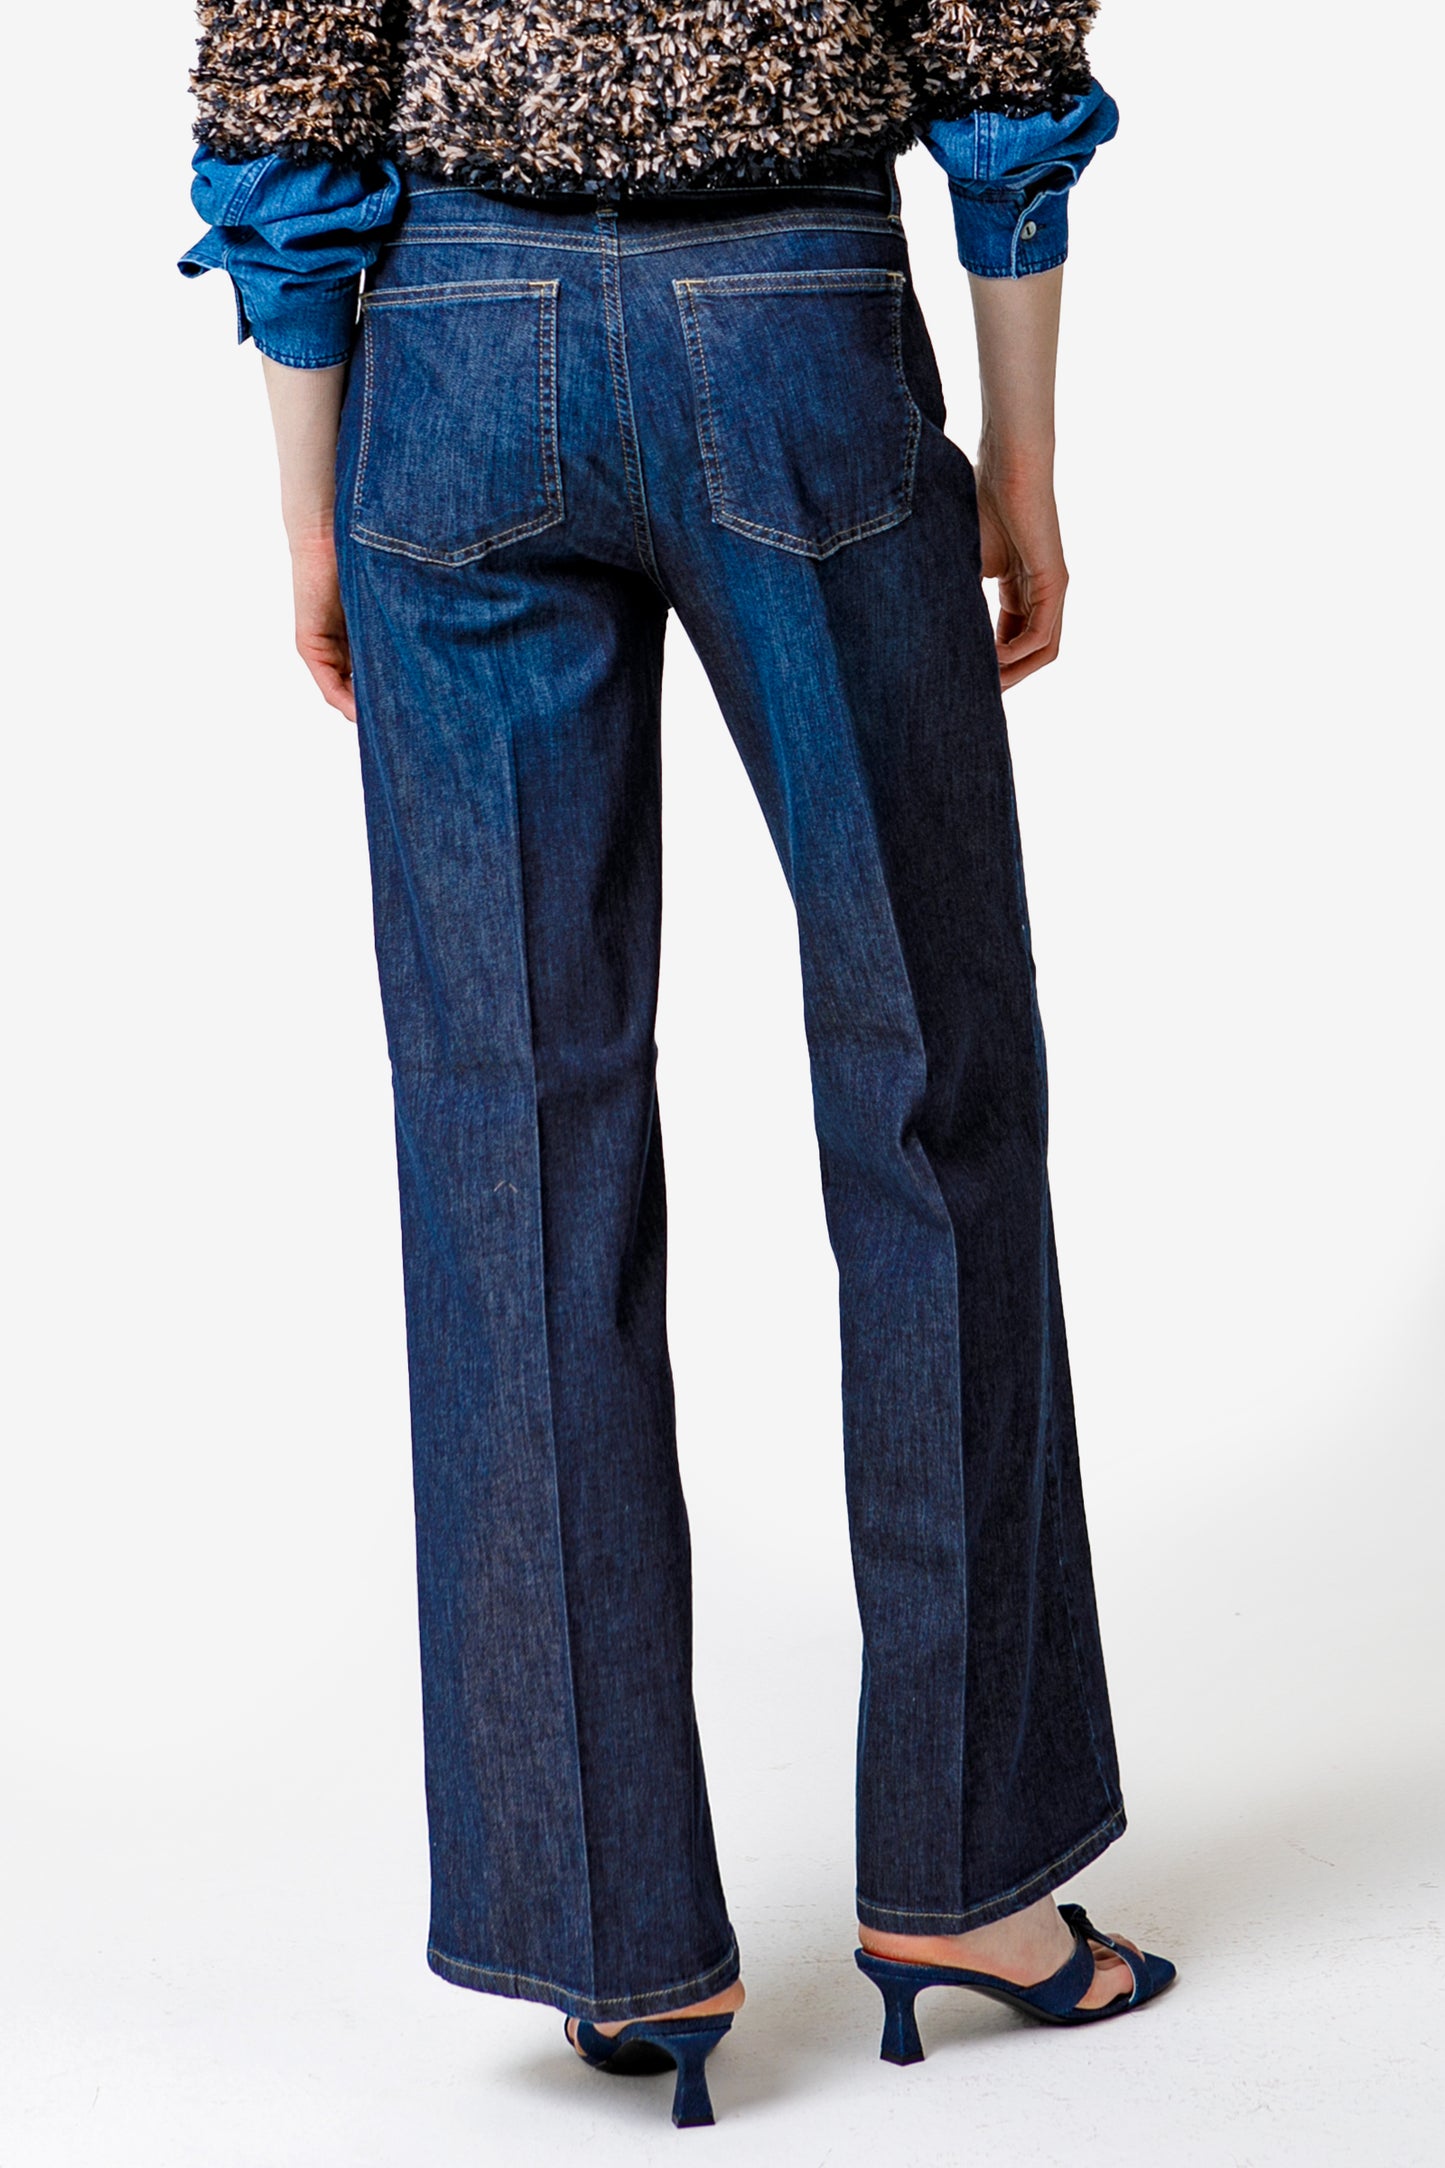 SOFIA - Low waist denim jeans